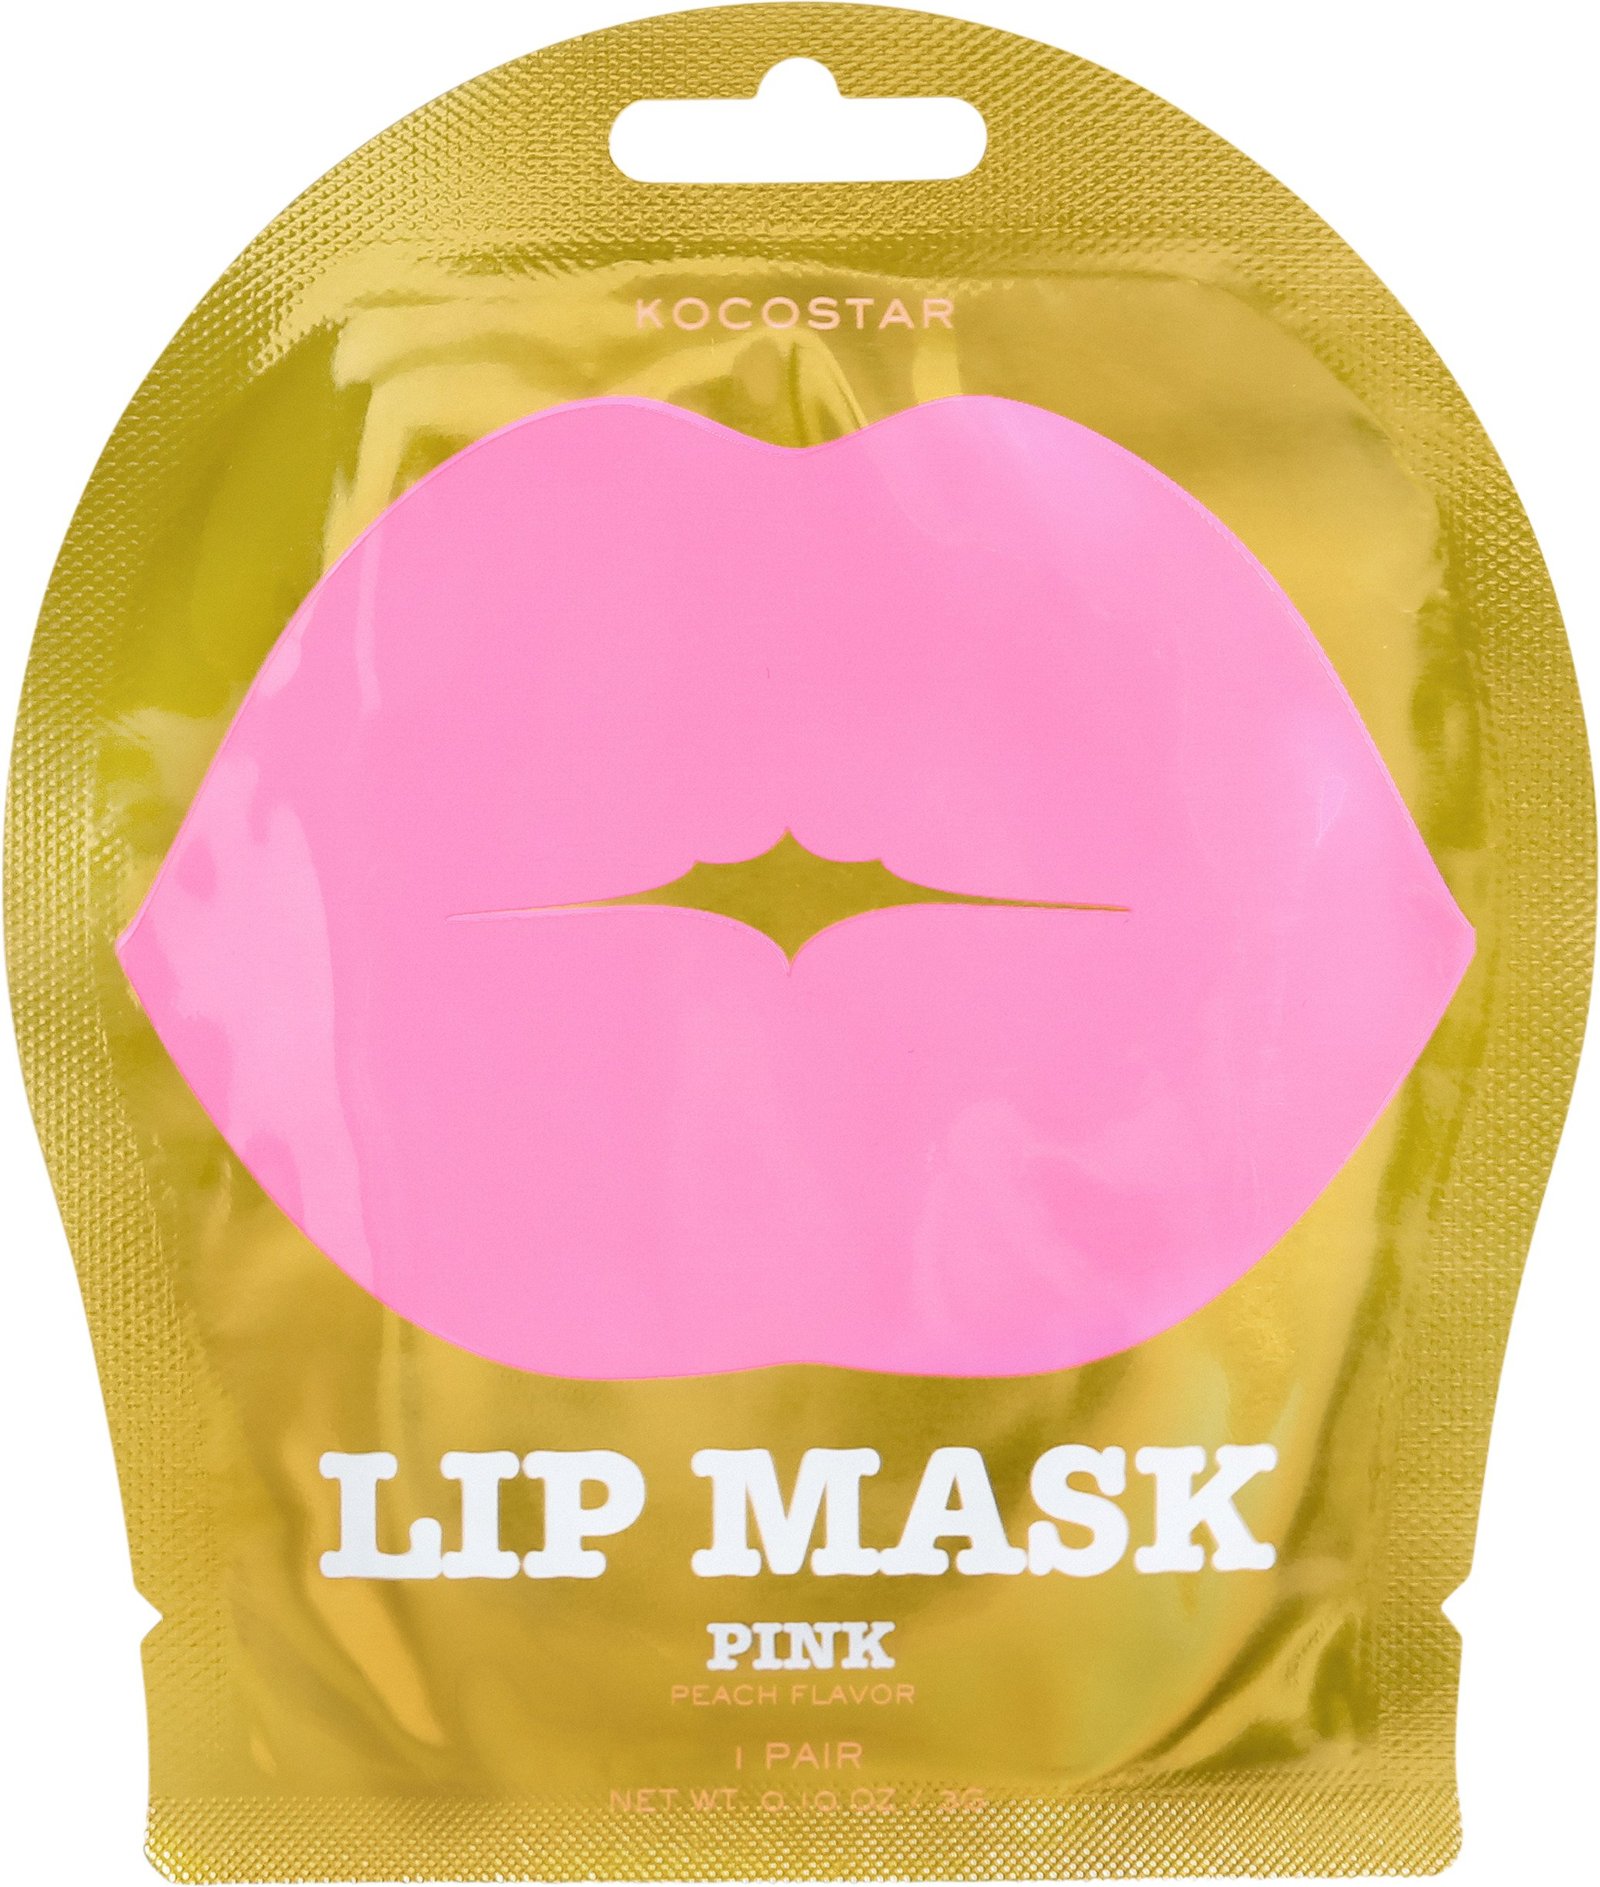 KOCOSTAR Lip Mask Pink Peach 1 st